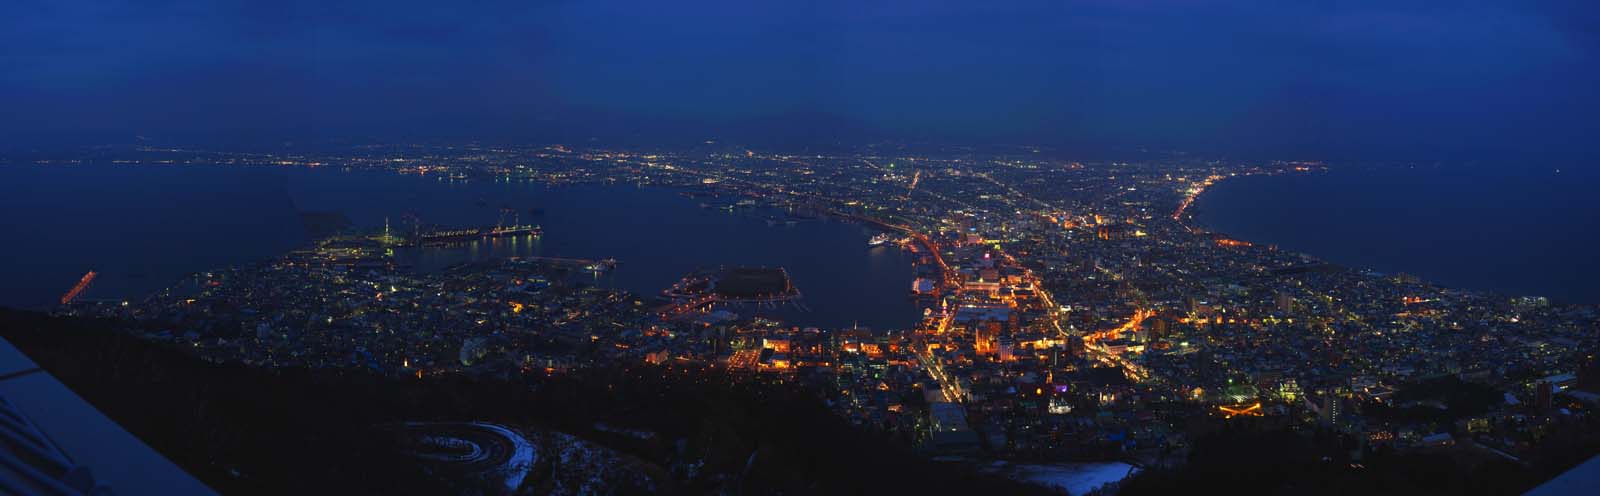 Foto, materiell, befreit, Landschaft, Bild, hat Foto auf Lager,Eine Nacht von Sicht von Mt. Hakodate-yama, Festliche Beleuchtung, Eine Sternwarte, Stadtlicht, Hafenstadt